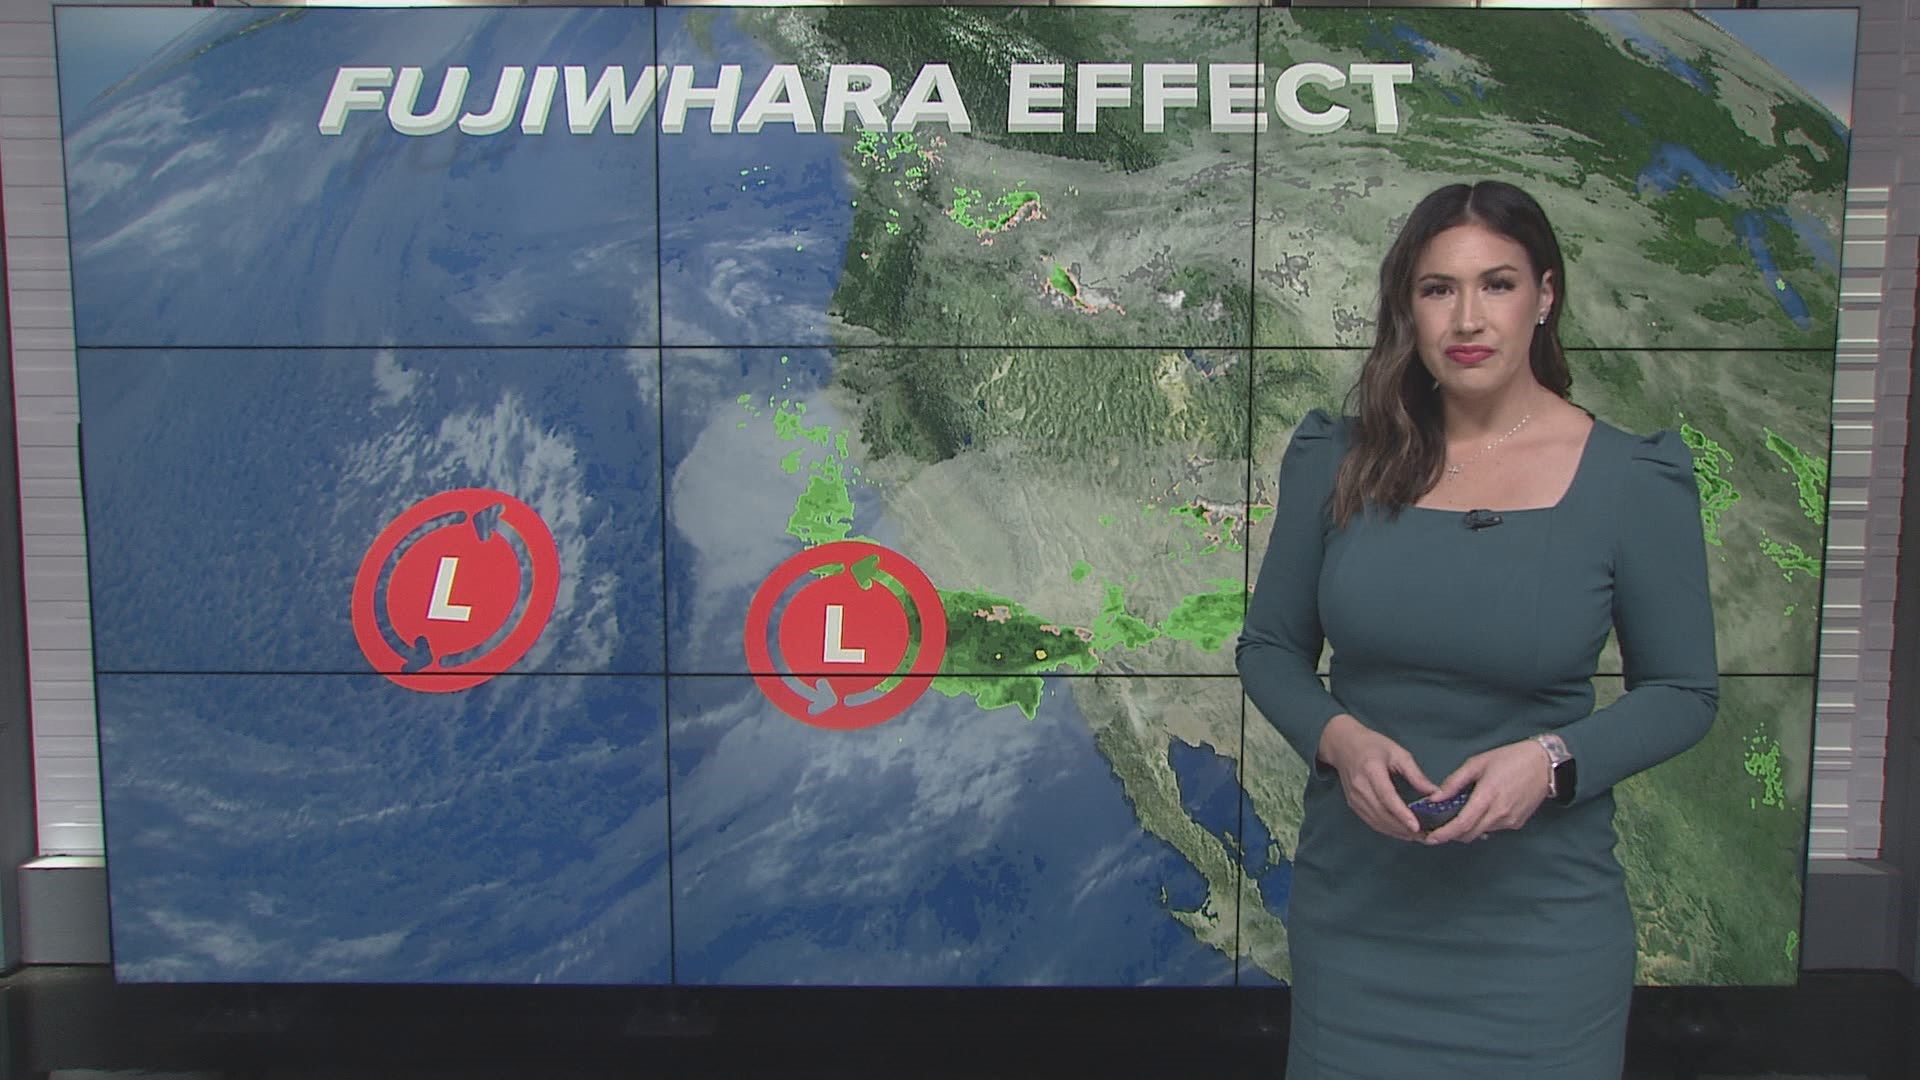 Fujiwhara effect seen on radar before California storm intensifies